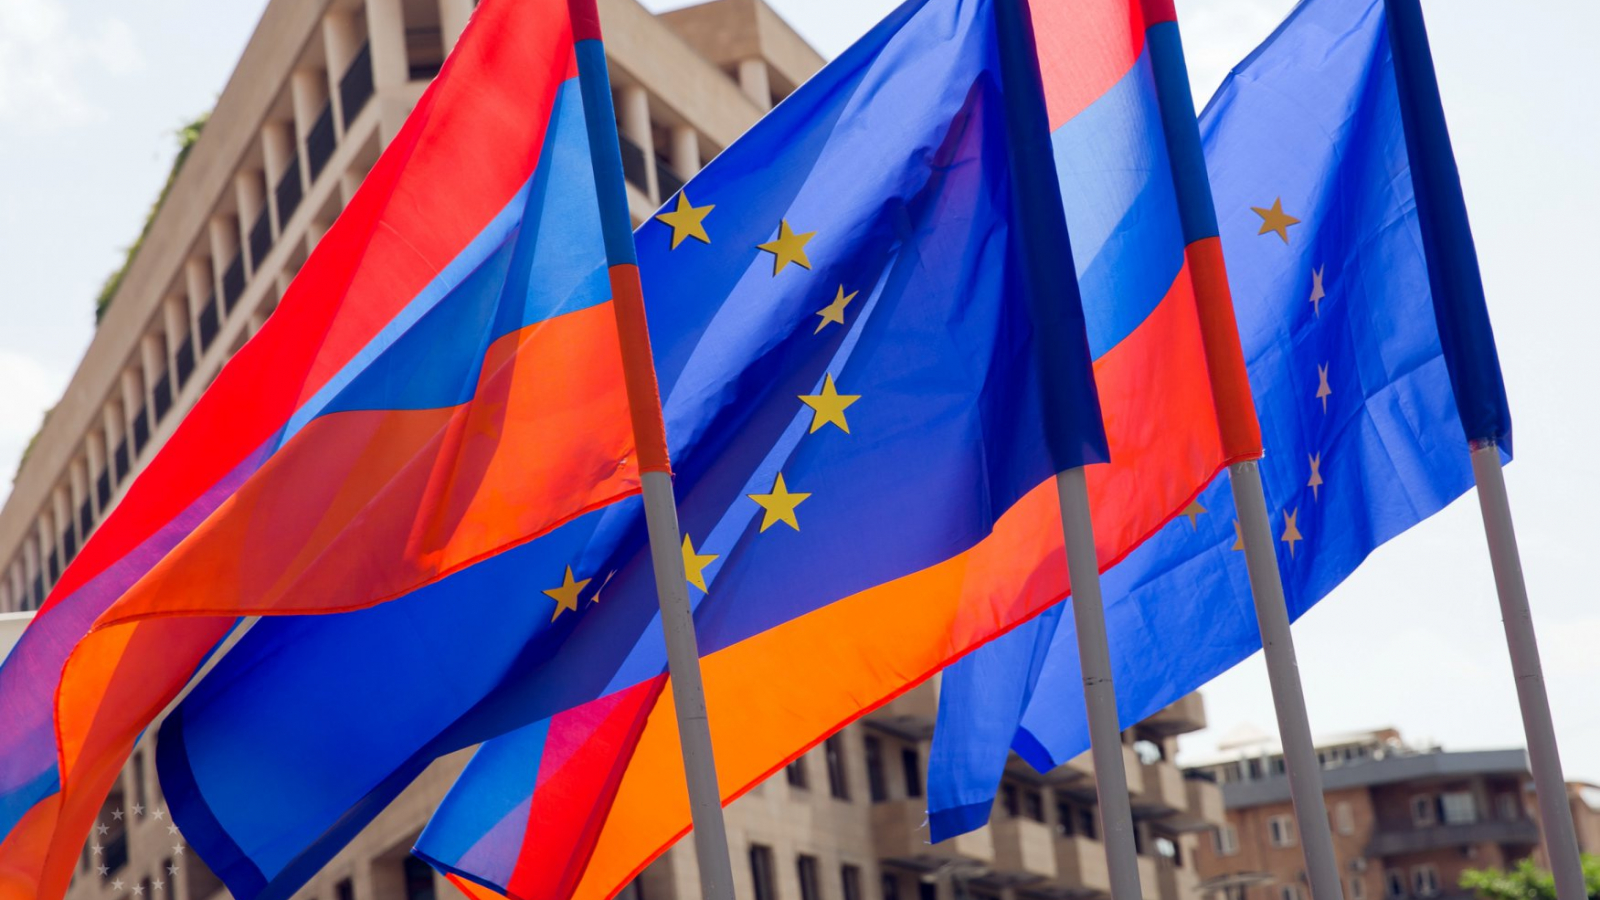 EU-Armenia Partnership Implementation Report: the EU is a crucial partner for Armenia’s reform agenda